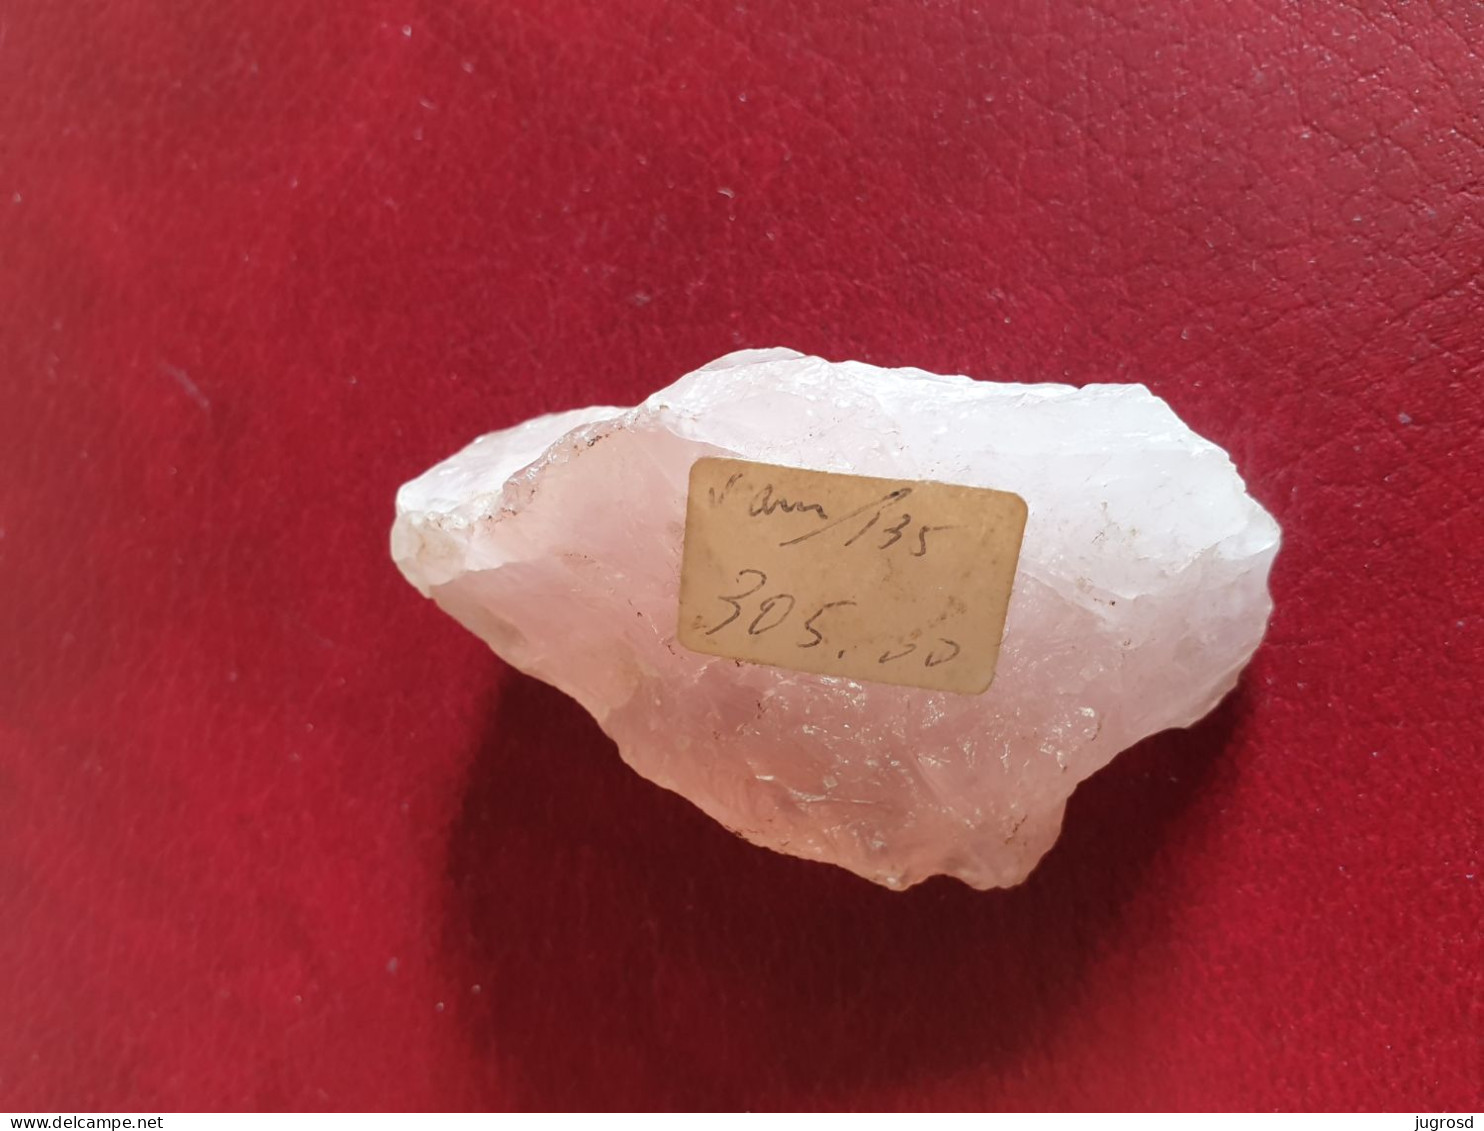 Bloc de quartz rose longueur 7,1 cm poids 84 grammes